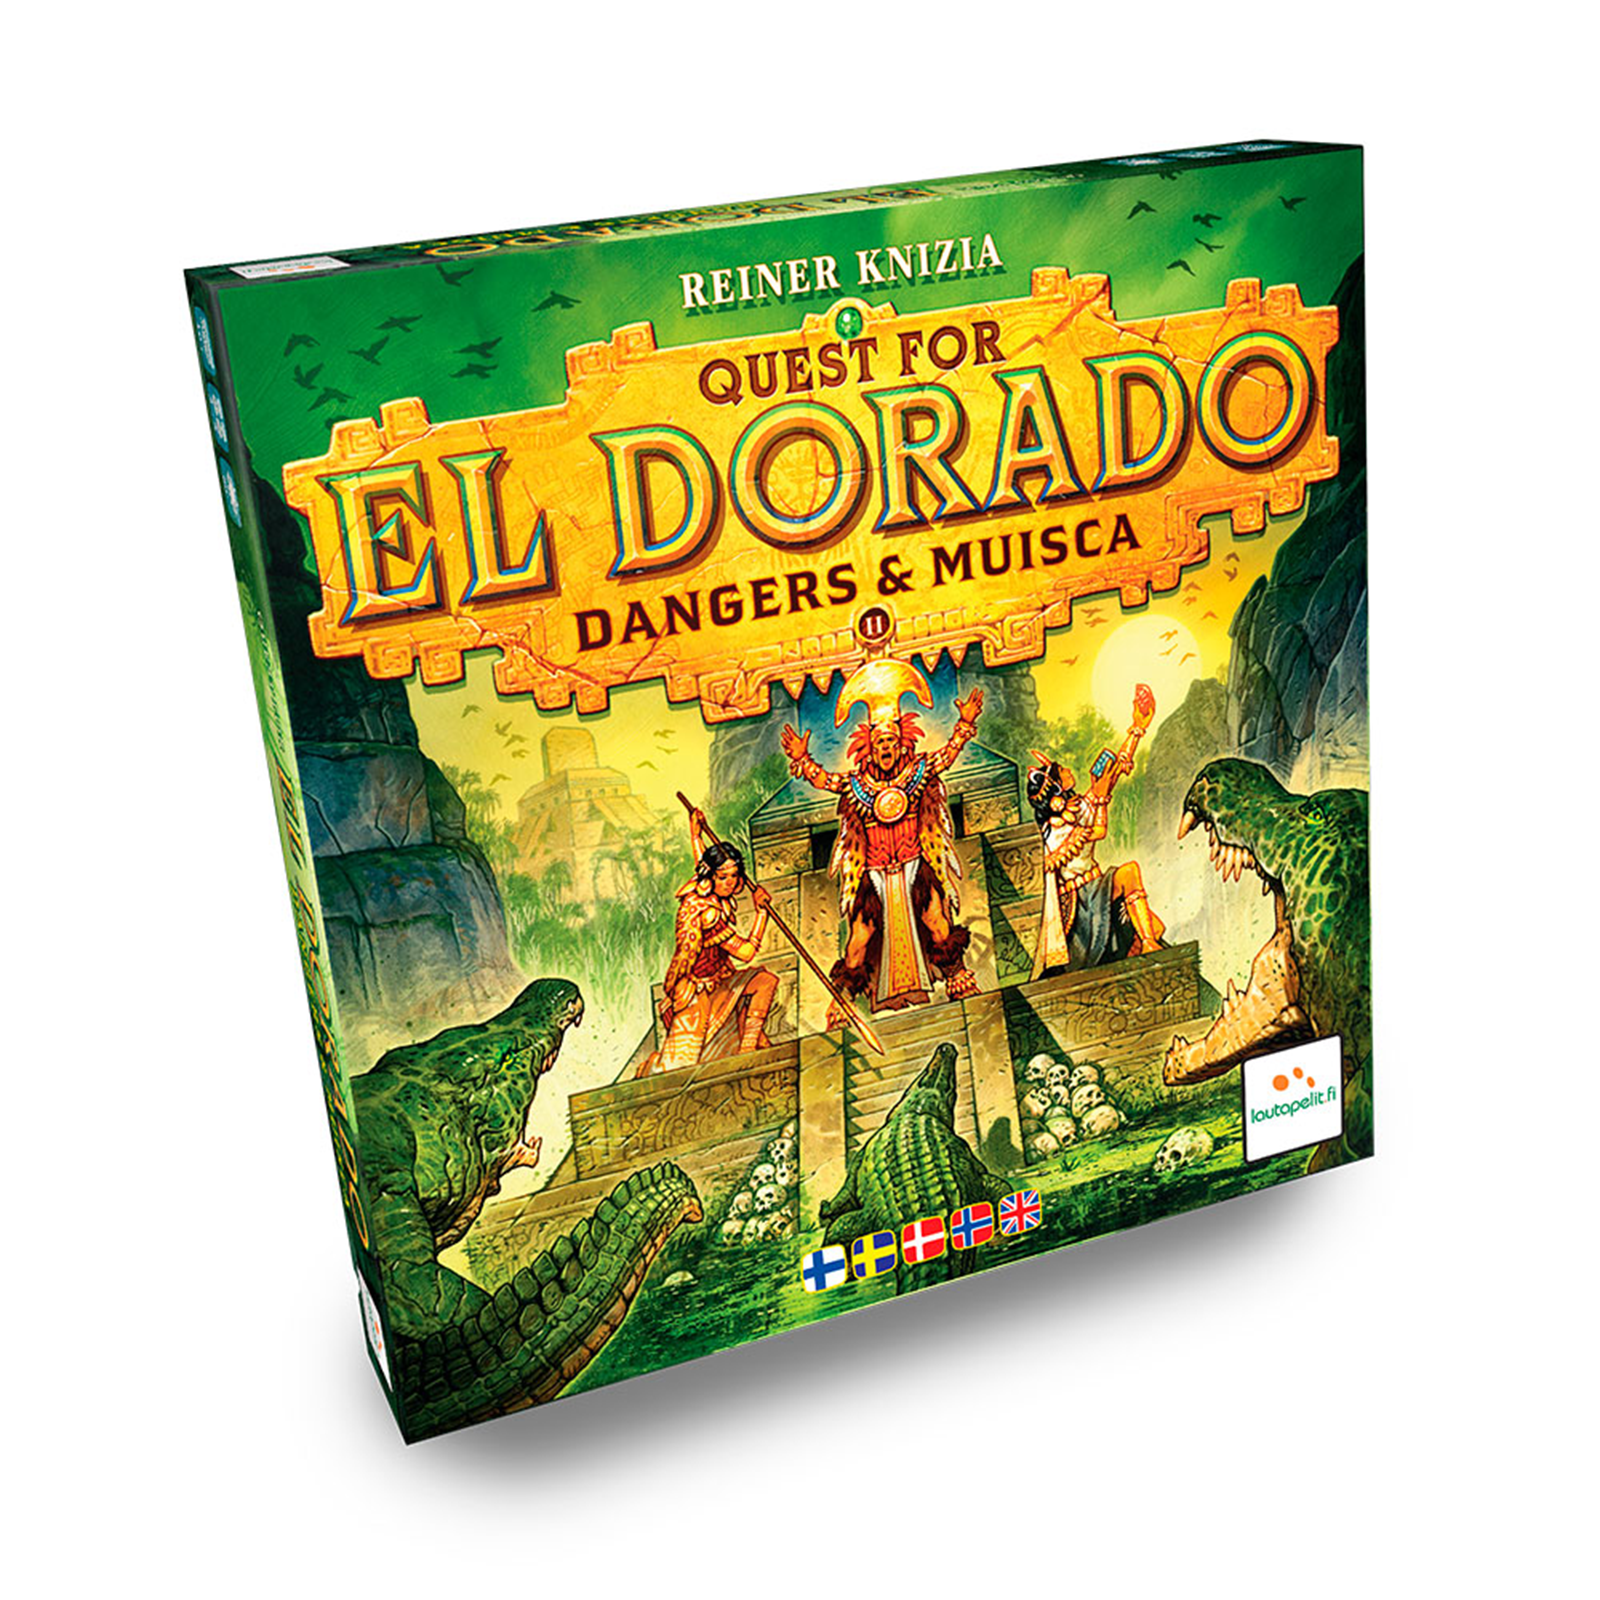 Se Quest for El Dorado - Dangers & Musica hos Lad-os-Spille.dk